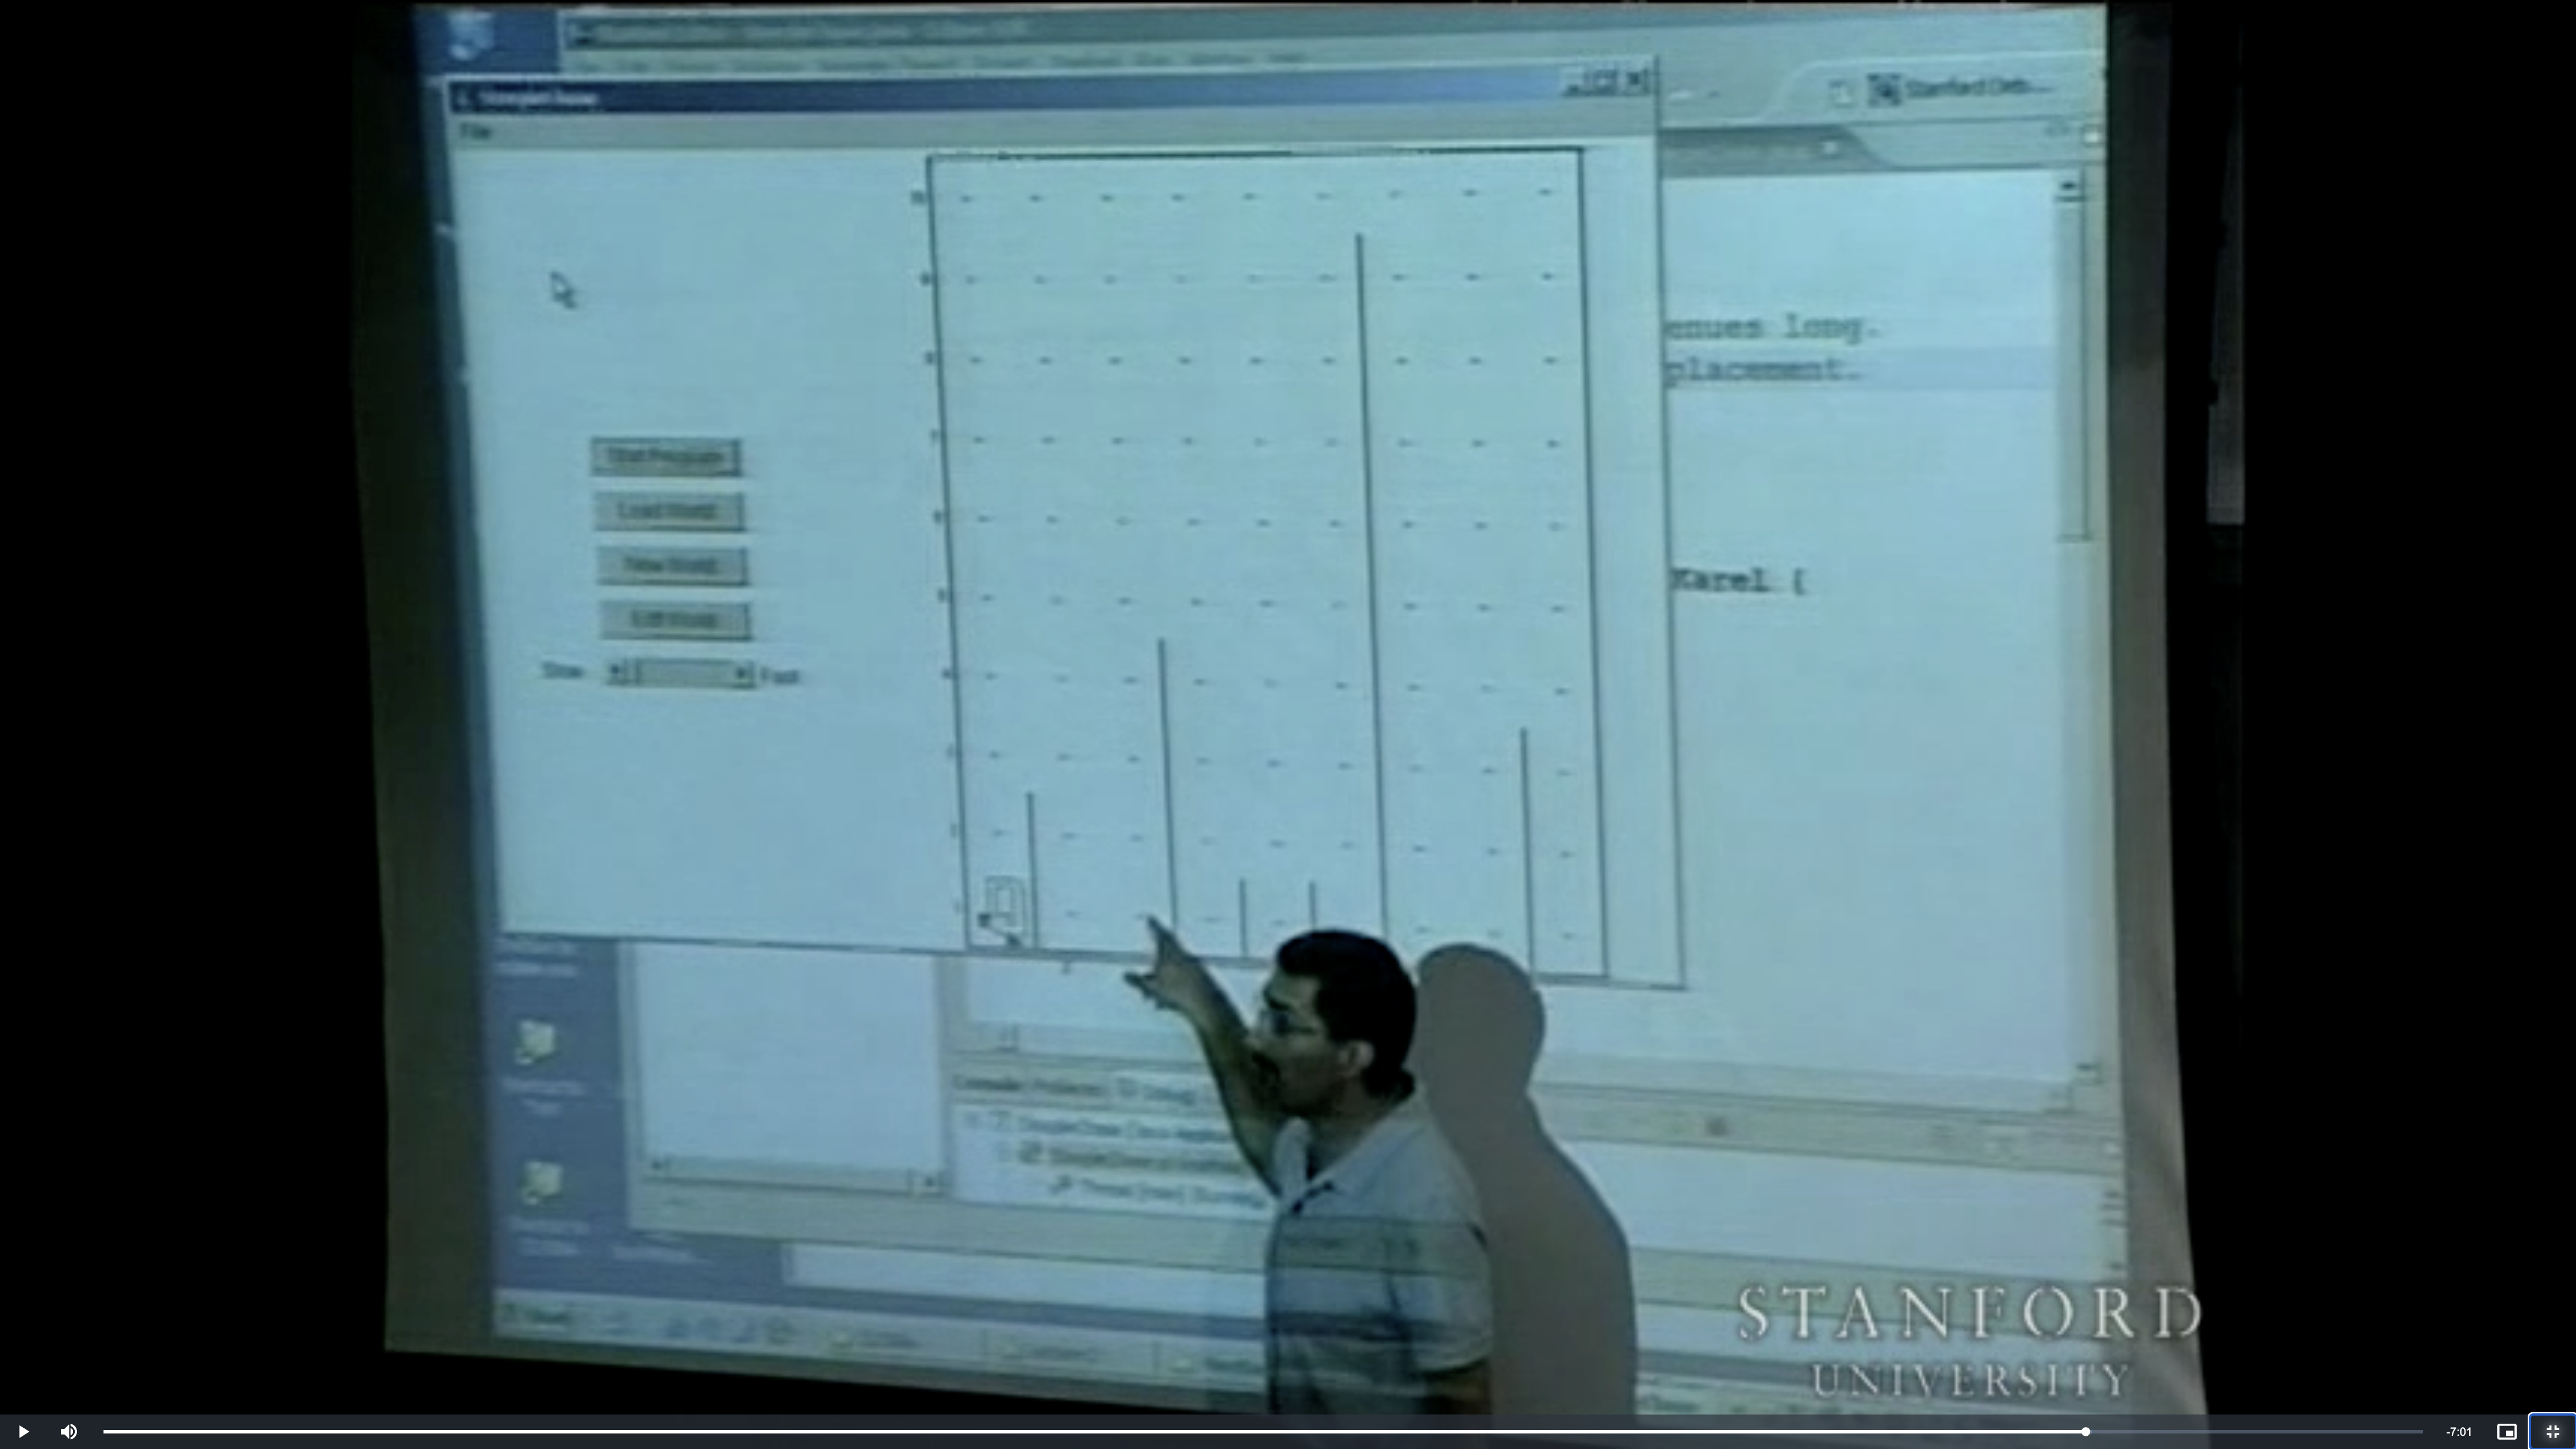 Мехран Сахами ведет курс "Методология программирования" в Стэнфорде